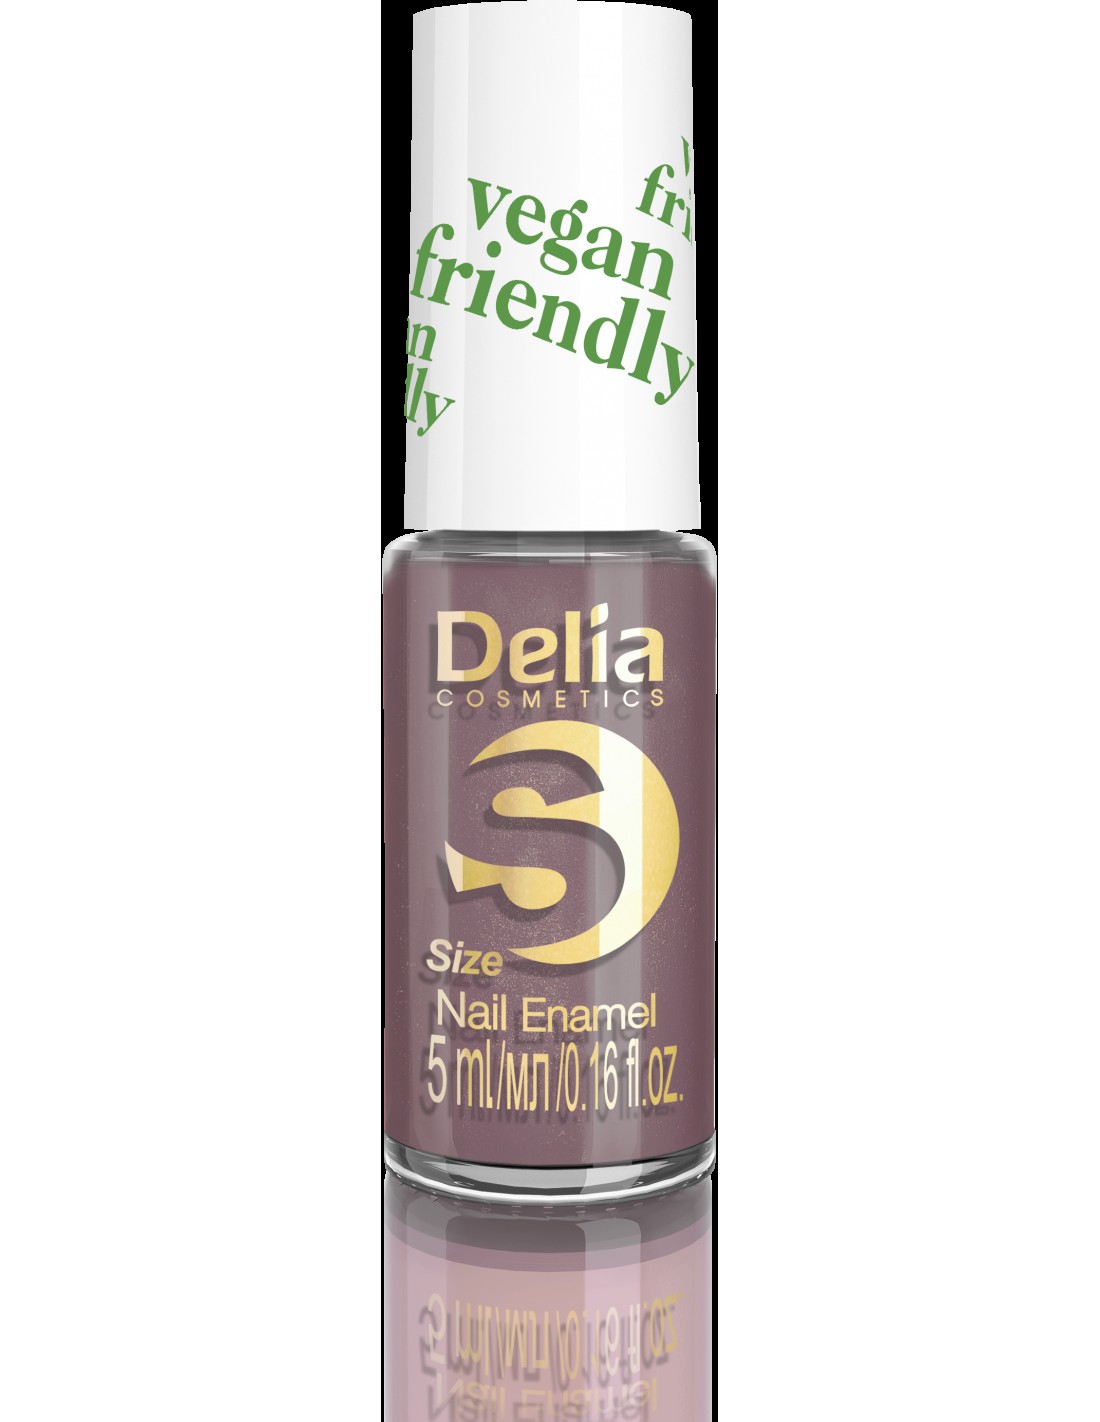 Delia Cosmetics Vegan Friendly Emalia do paznokci Size S nr 211 My Darling  5ml